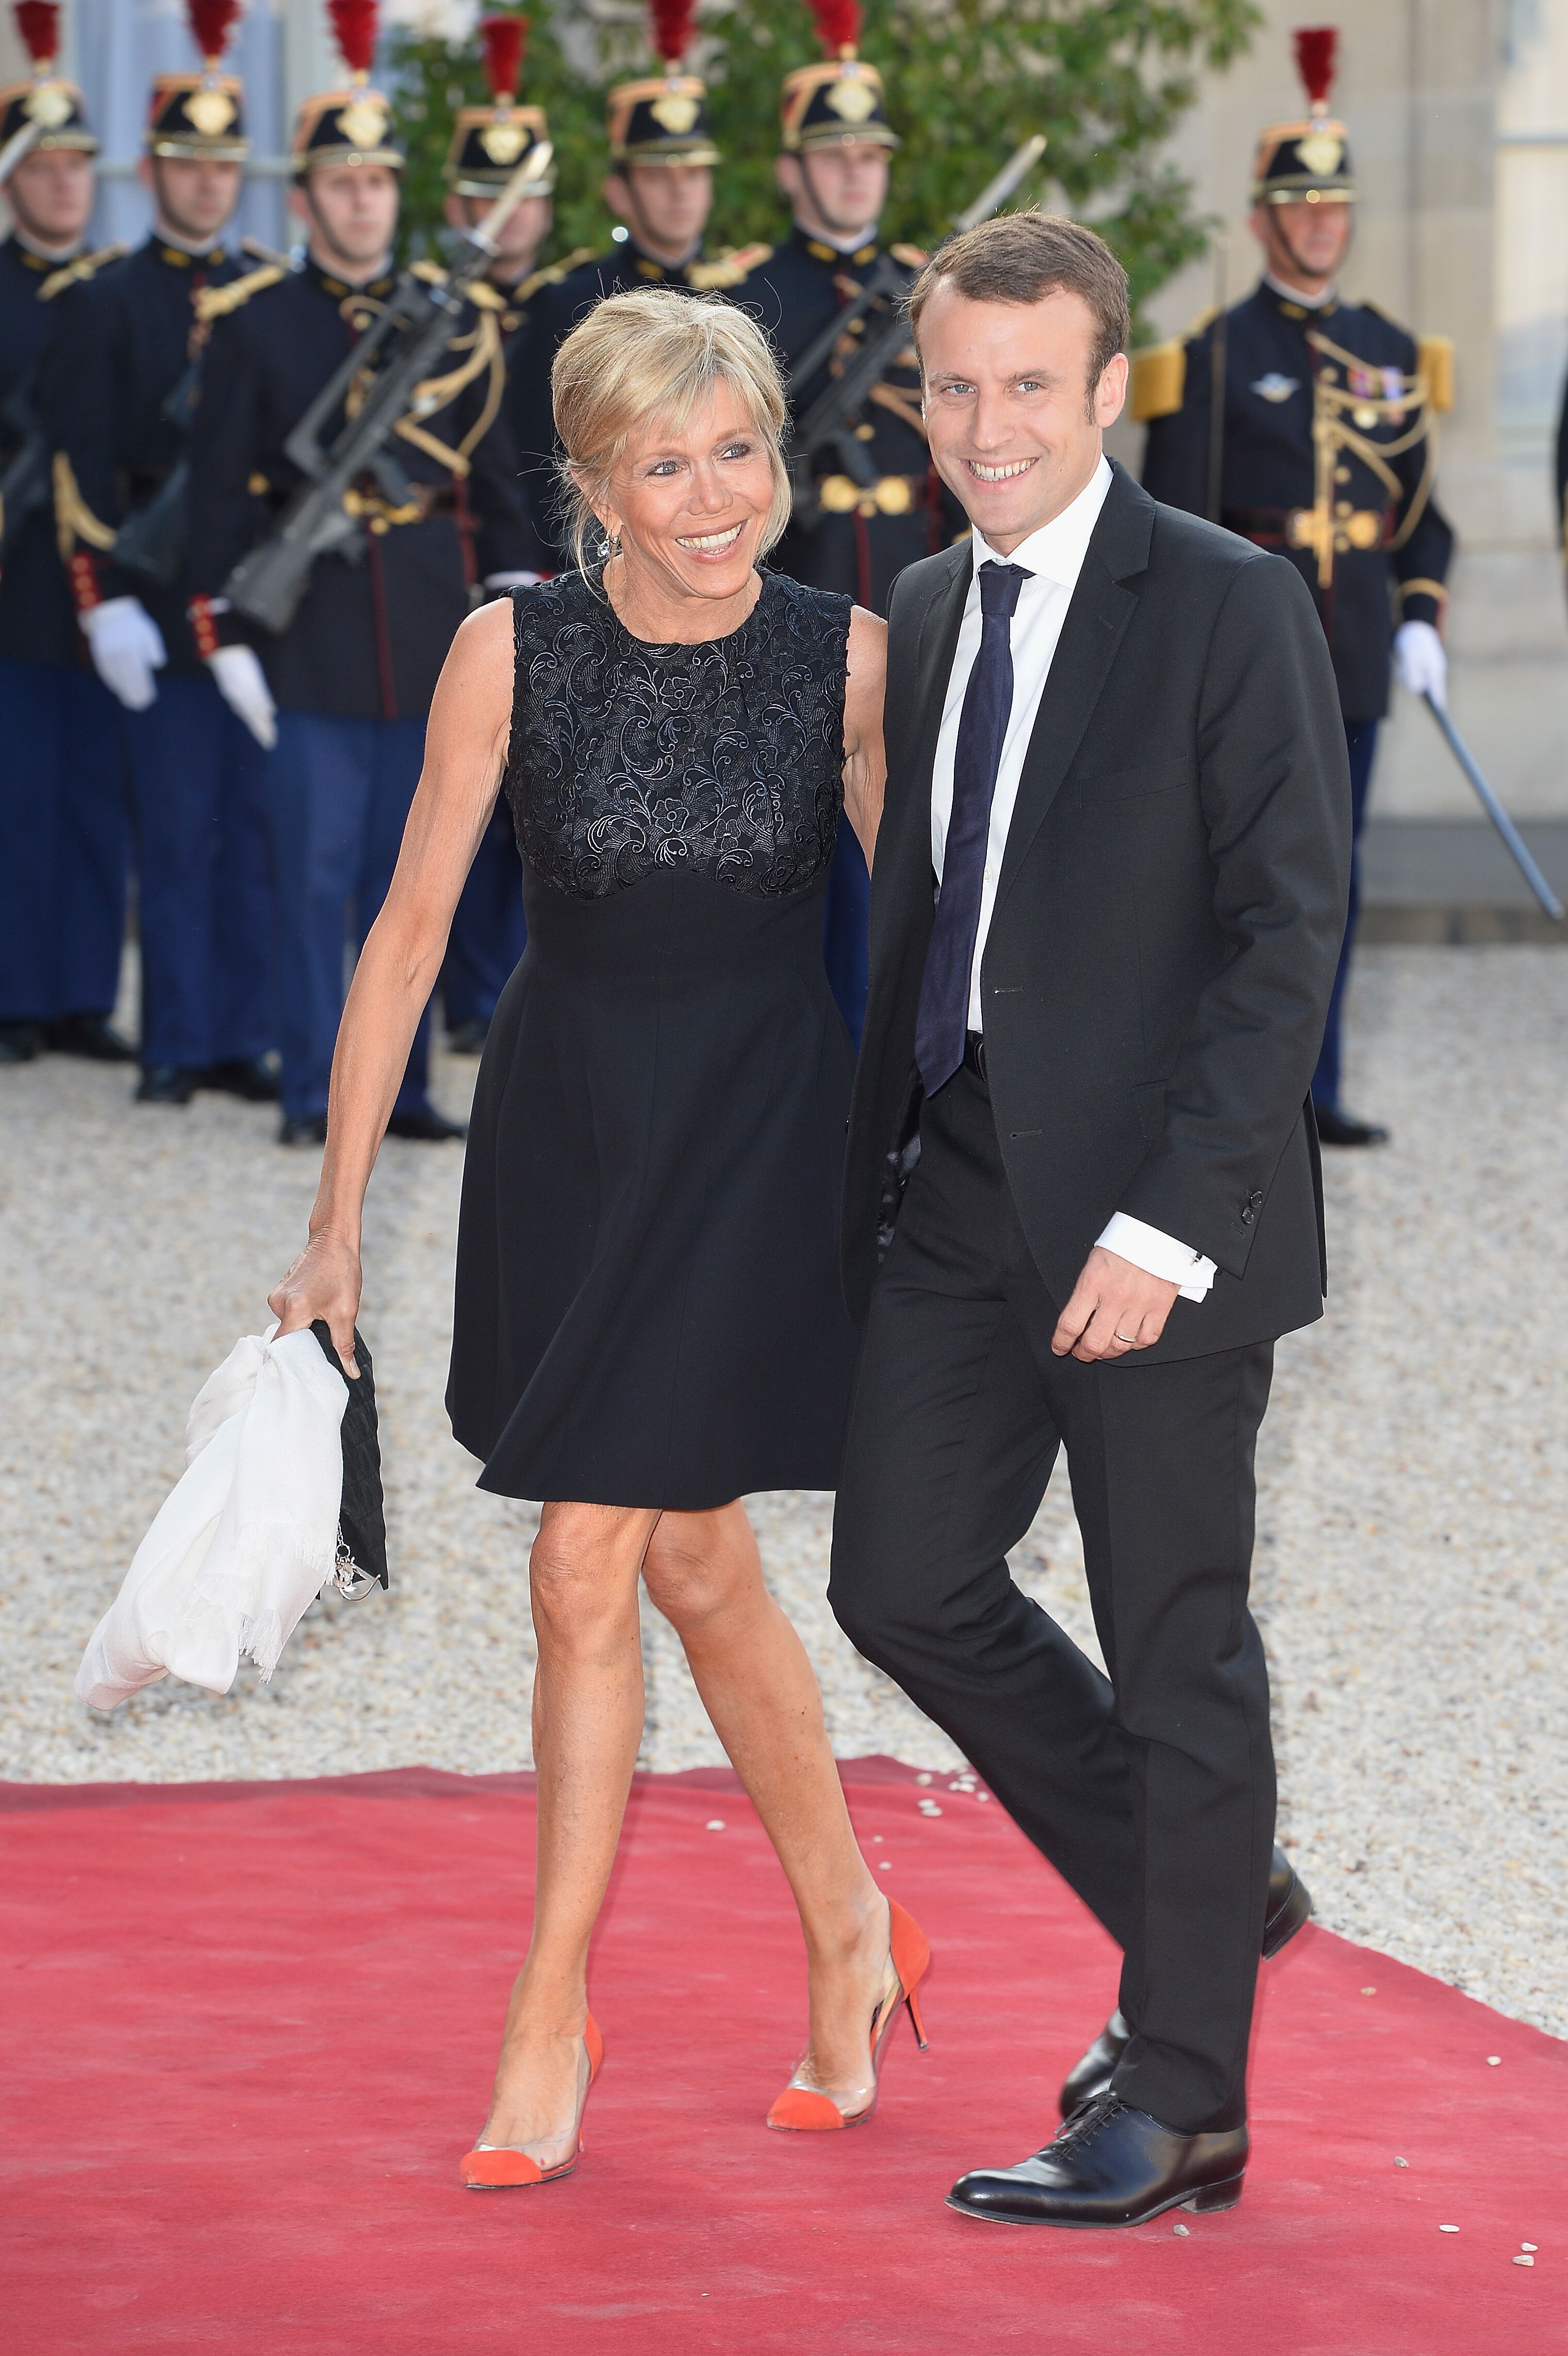  Emmanuel Macron et son épouse Brigitte Trogneux au Palais de l'Elysée le 2 juin 2015 à Paris, France. | Photo : Getty Images